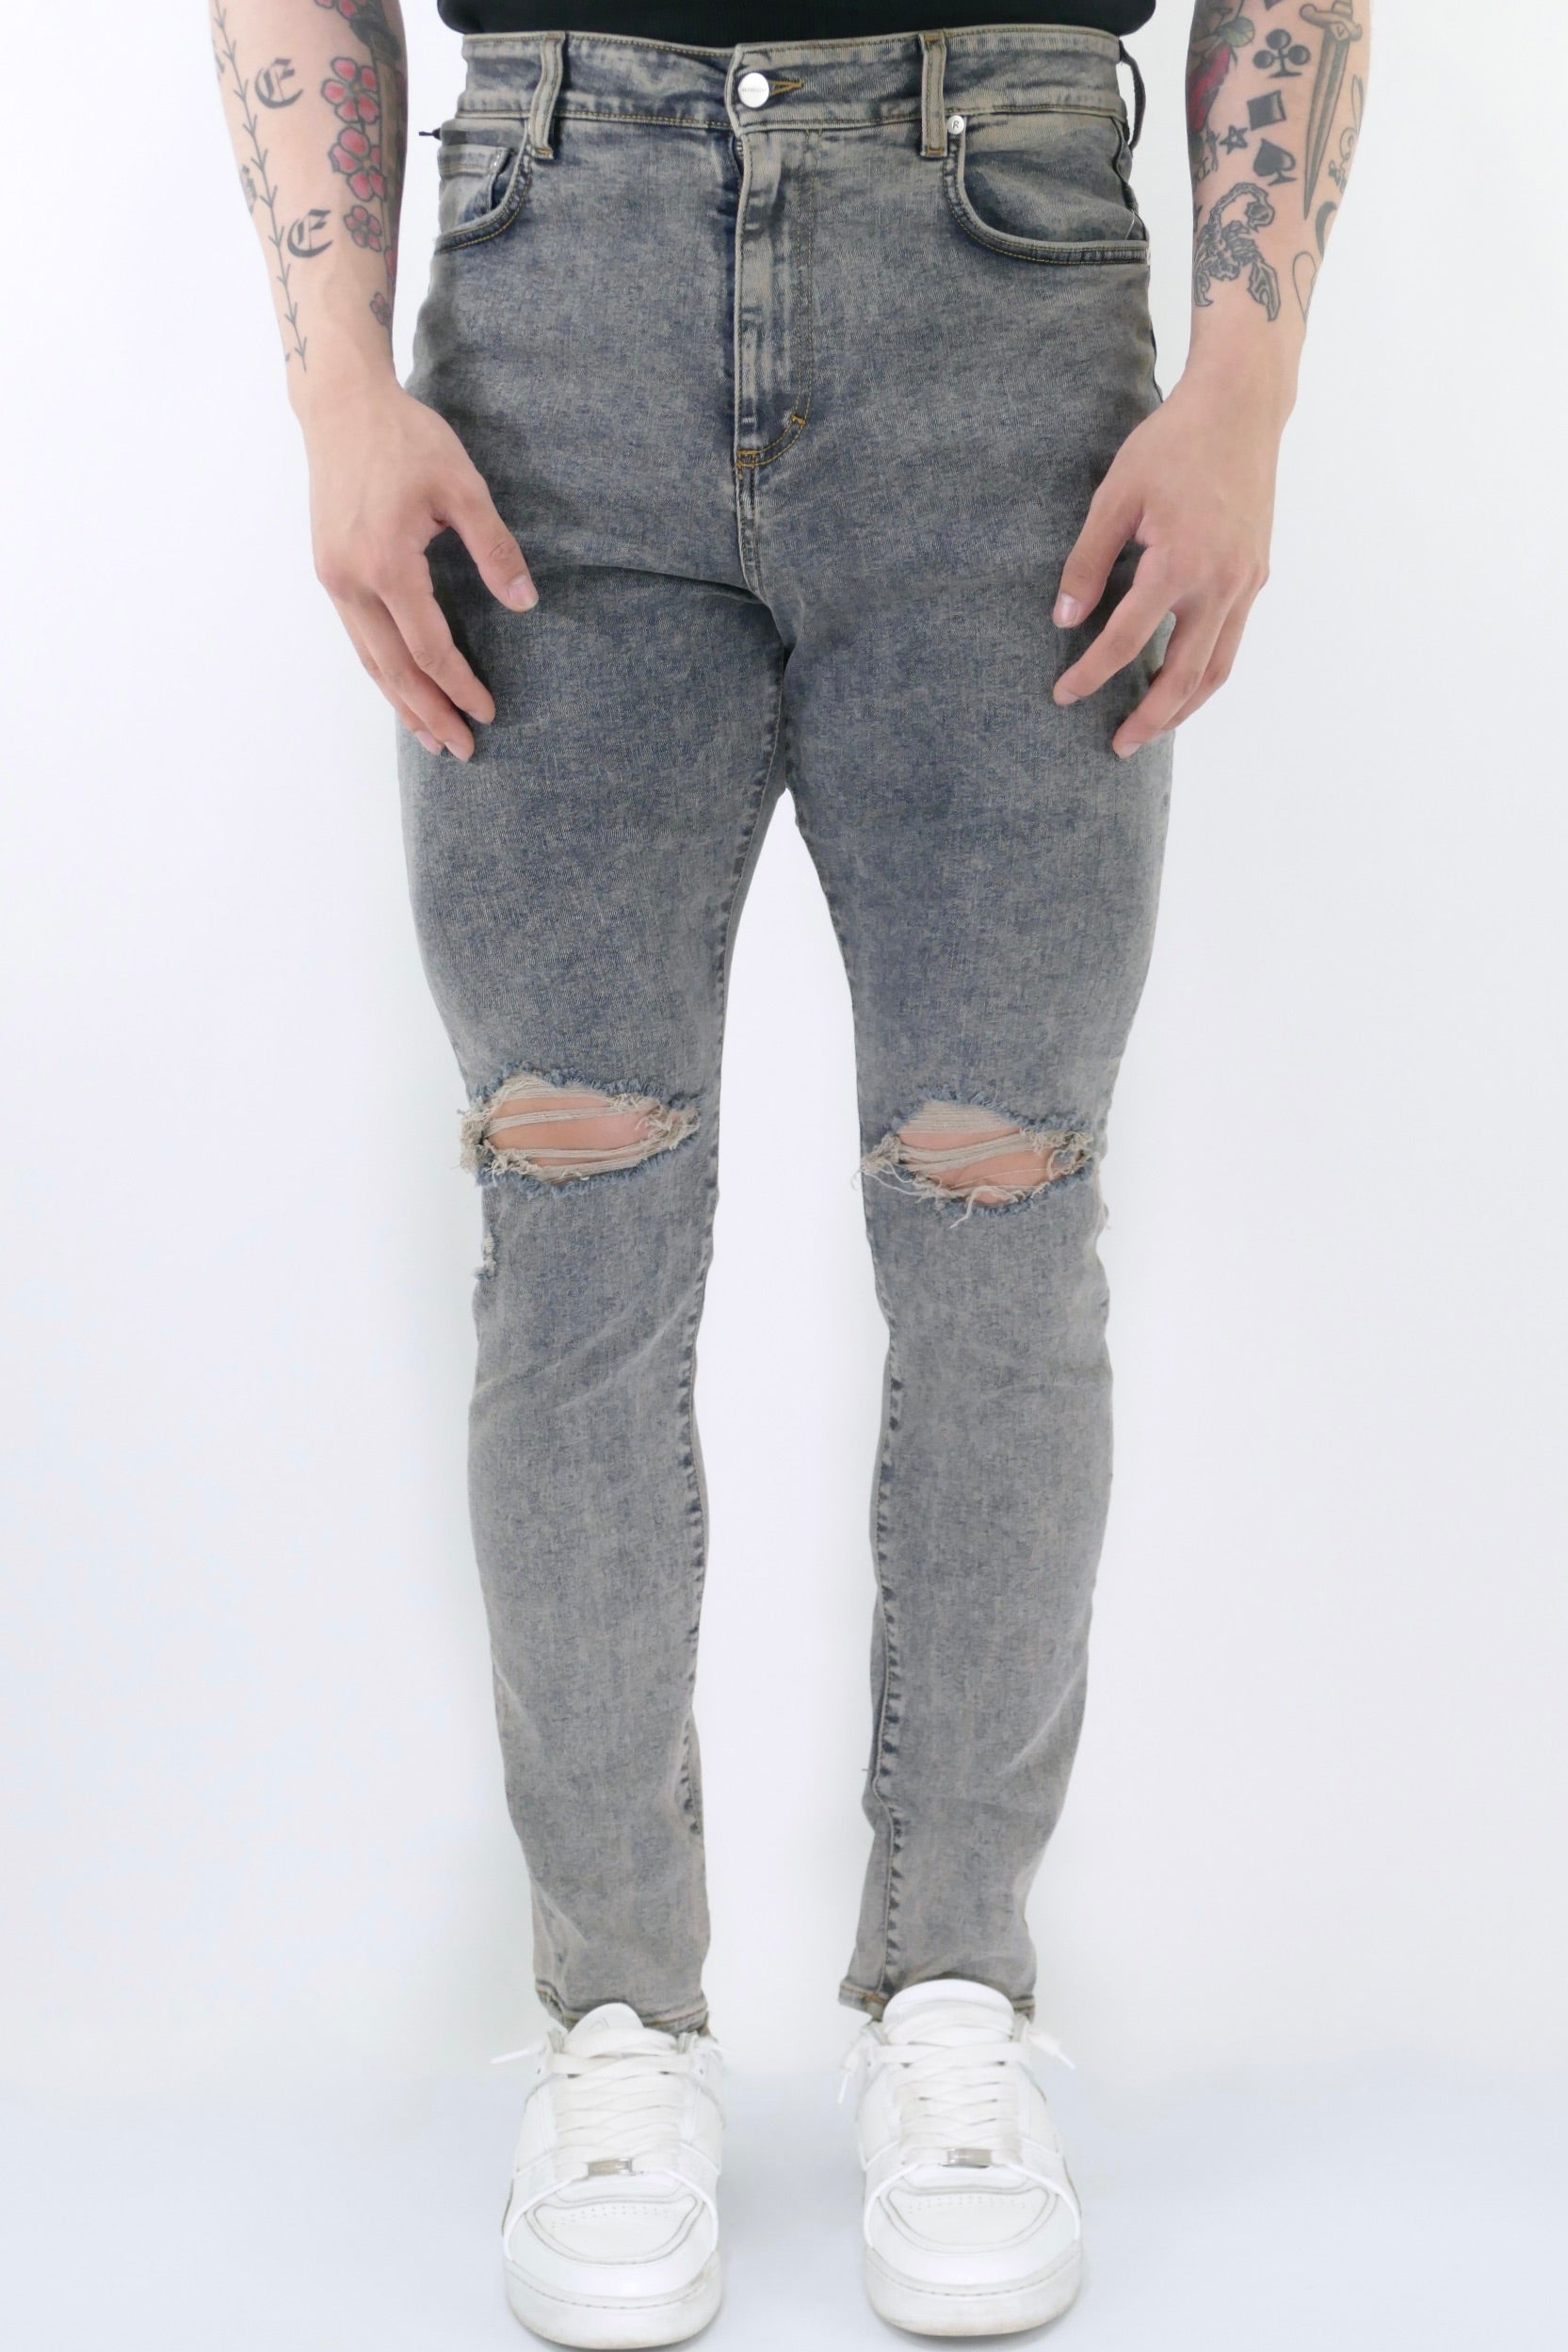 割引クーポン通販 Invert Ideology Baggy FloorMopping Jeans - メンズ